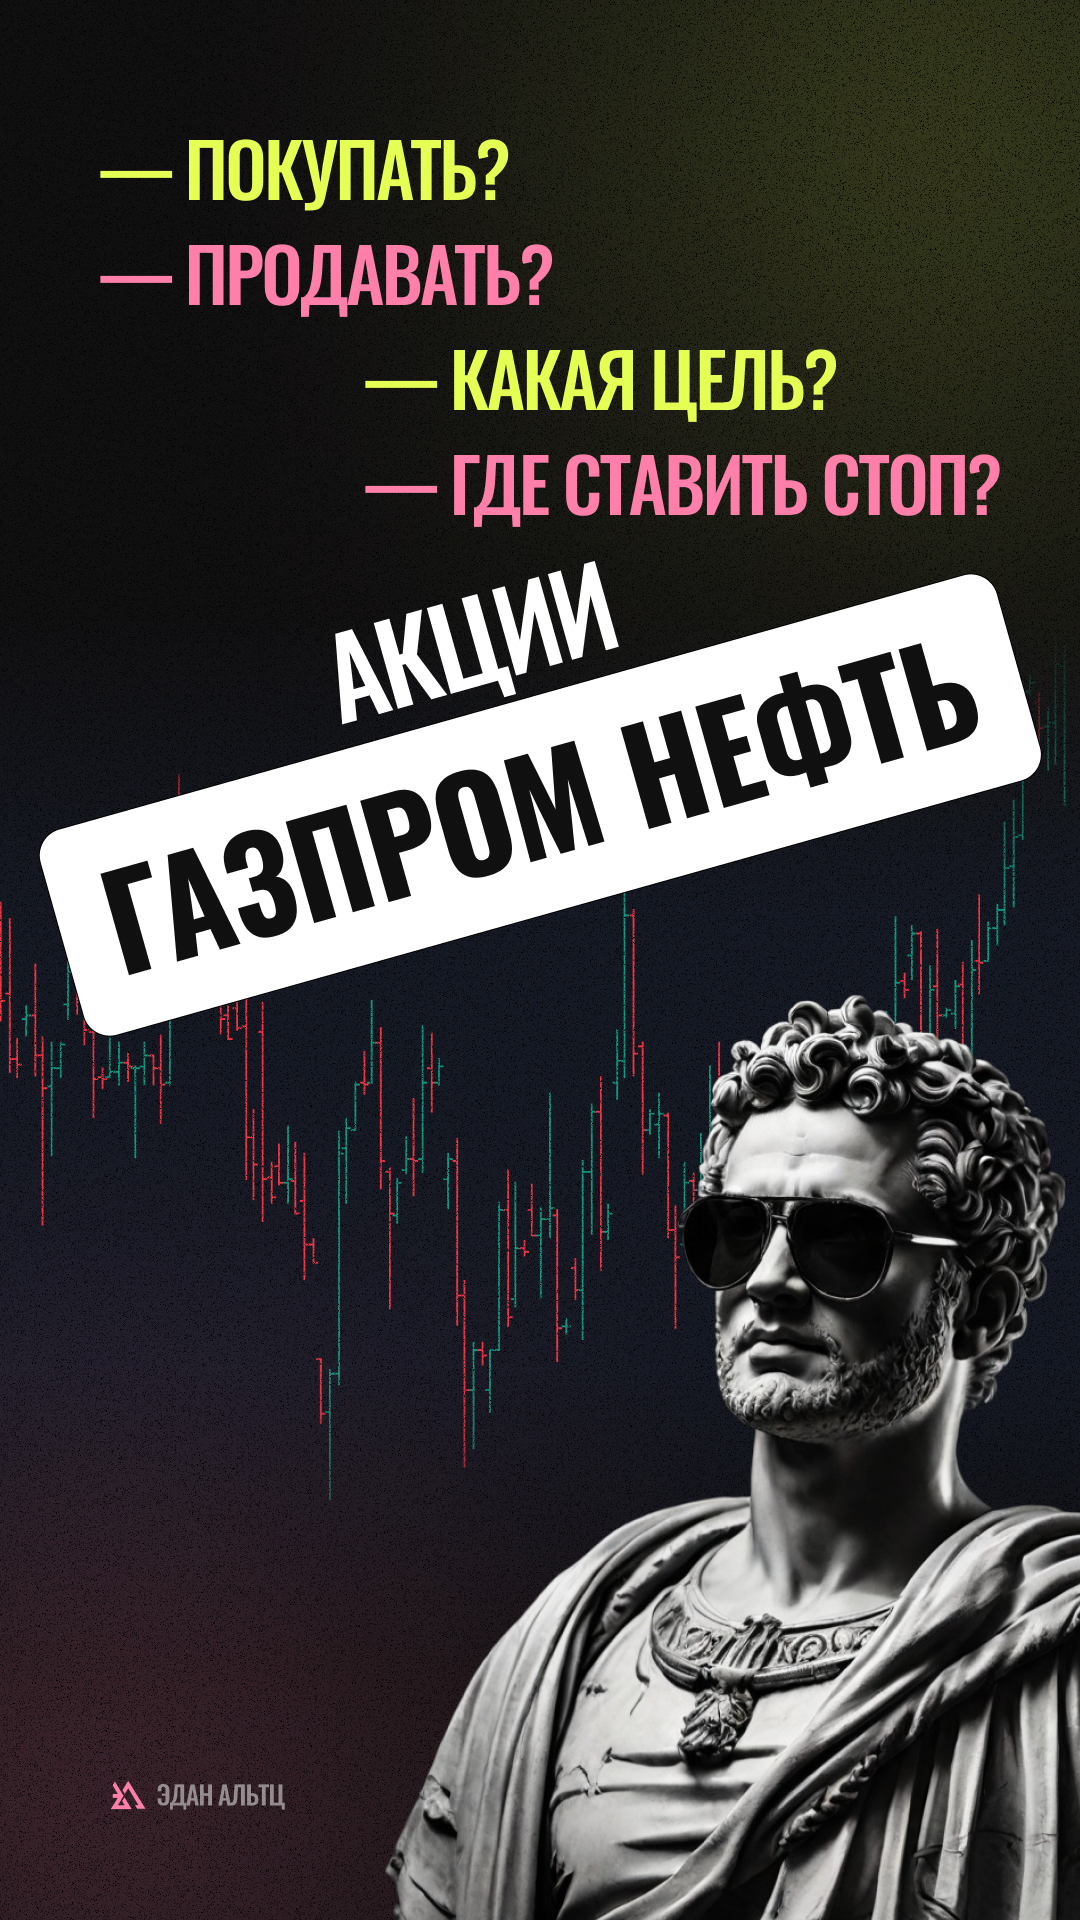 🔥 Акции Газпром нефть $SIBN  — идея \ цели \ стопы \ обзор